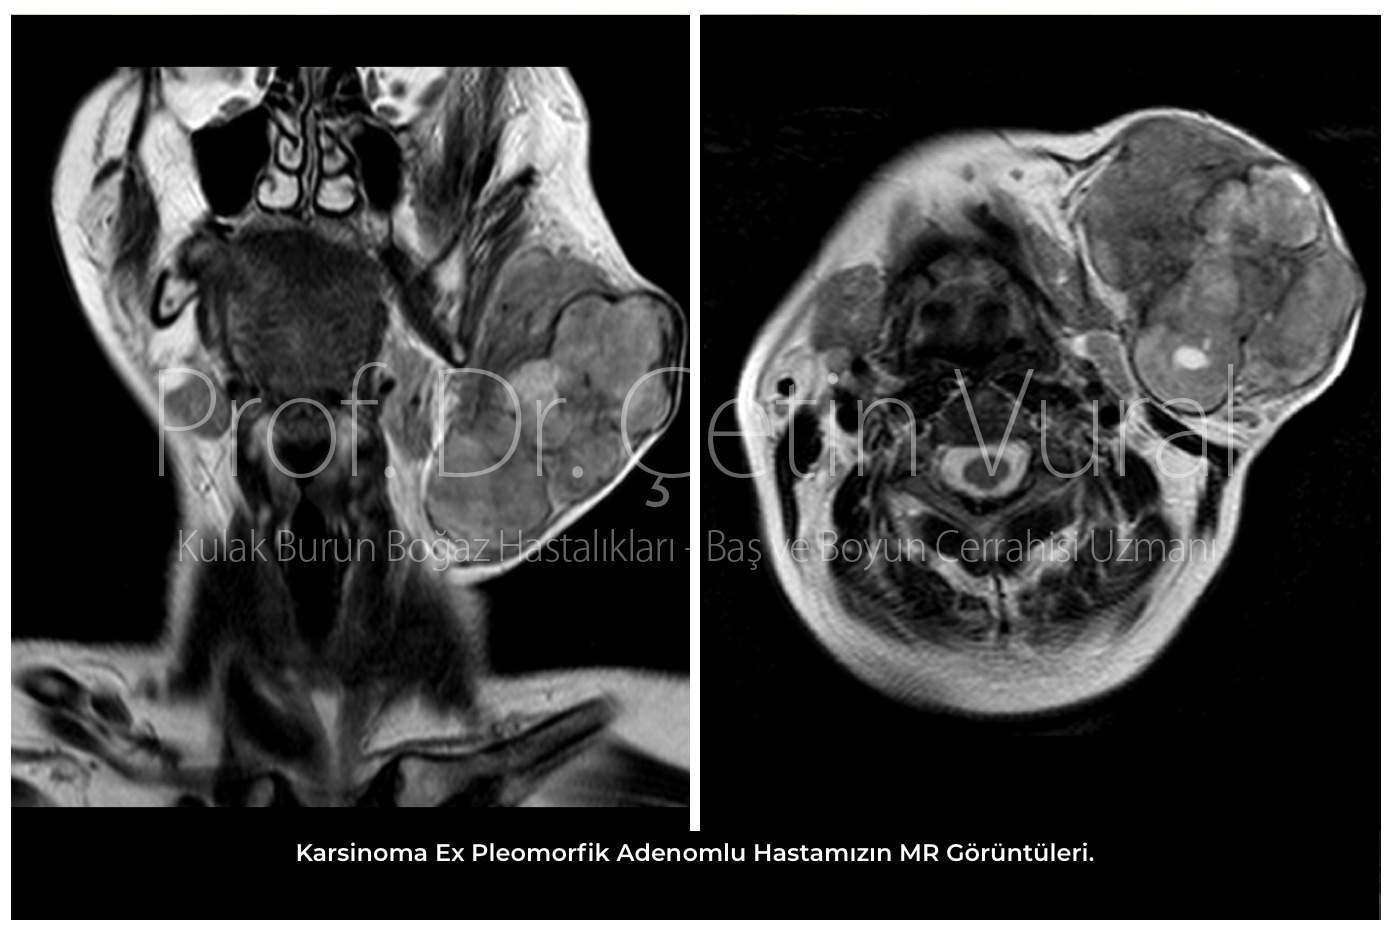 Karsinoma Ex Pleomorfik Adenomlu Hastamızın MR Görüntüleri - Prof. Dr. Çetin Vural